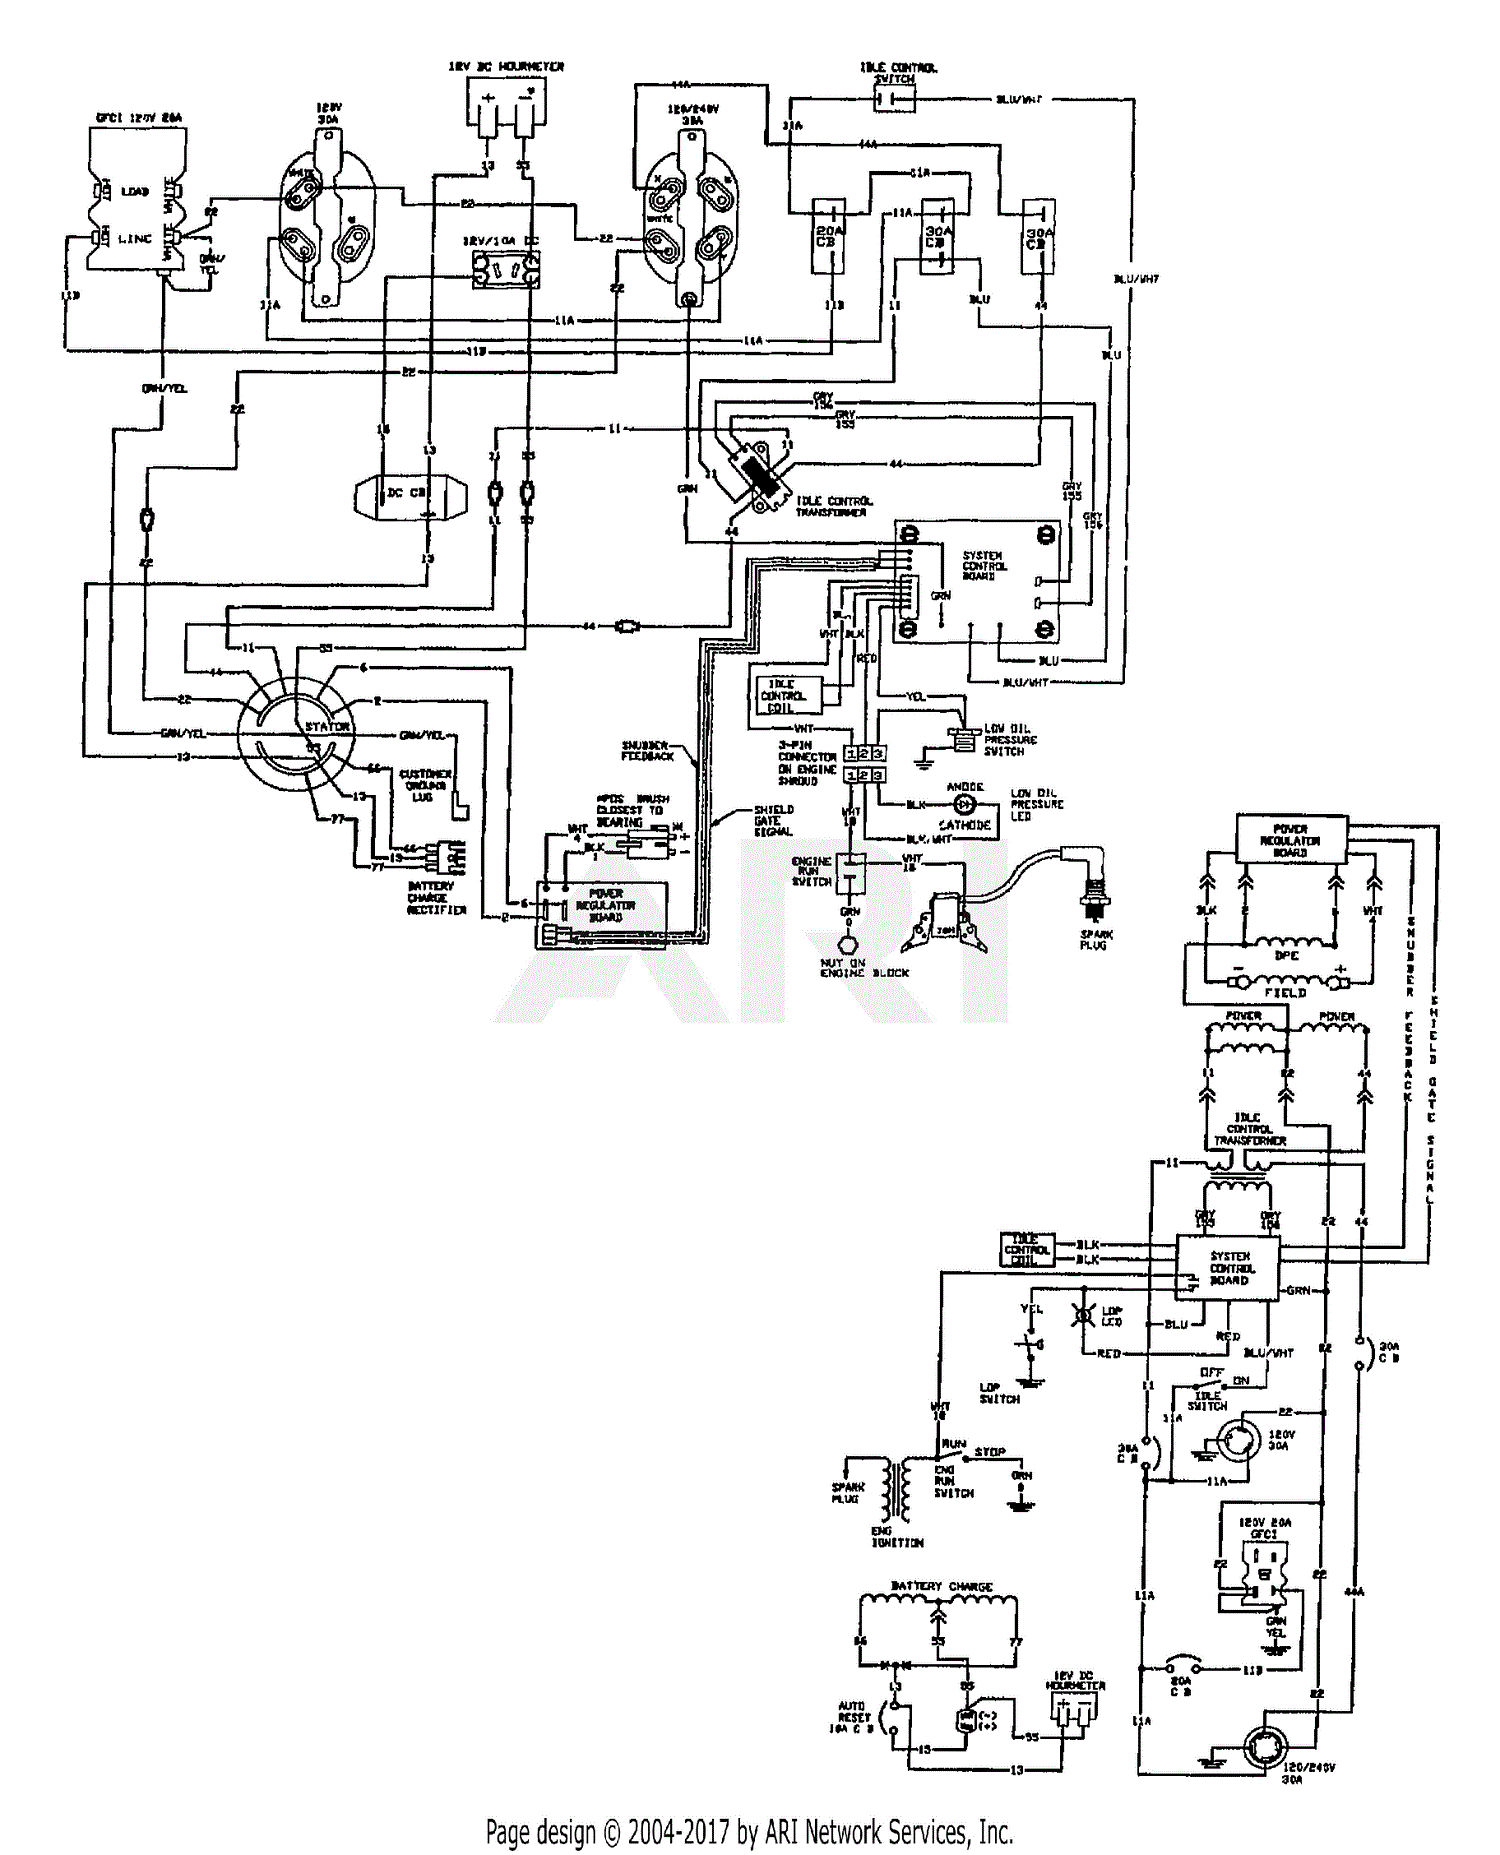 genpart 6000 wiring diagram